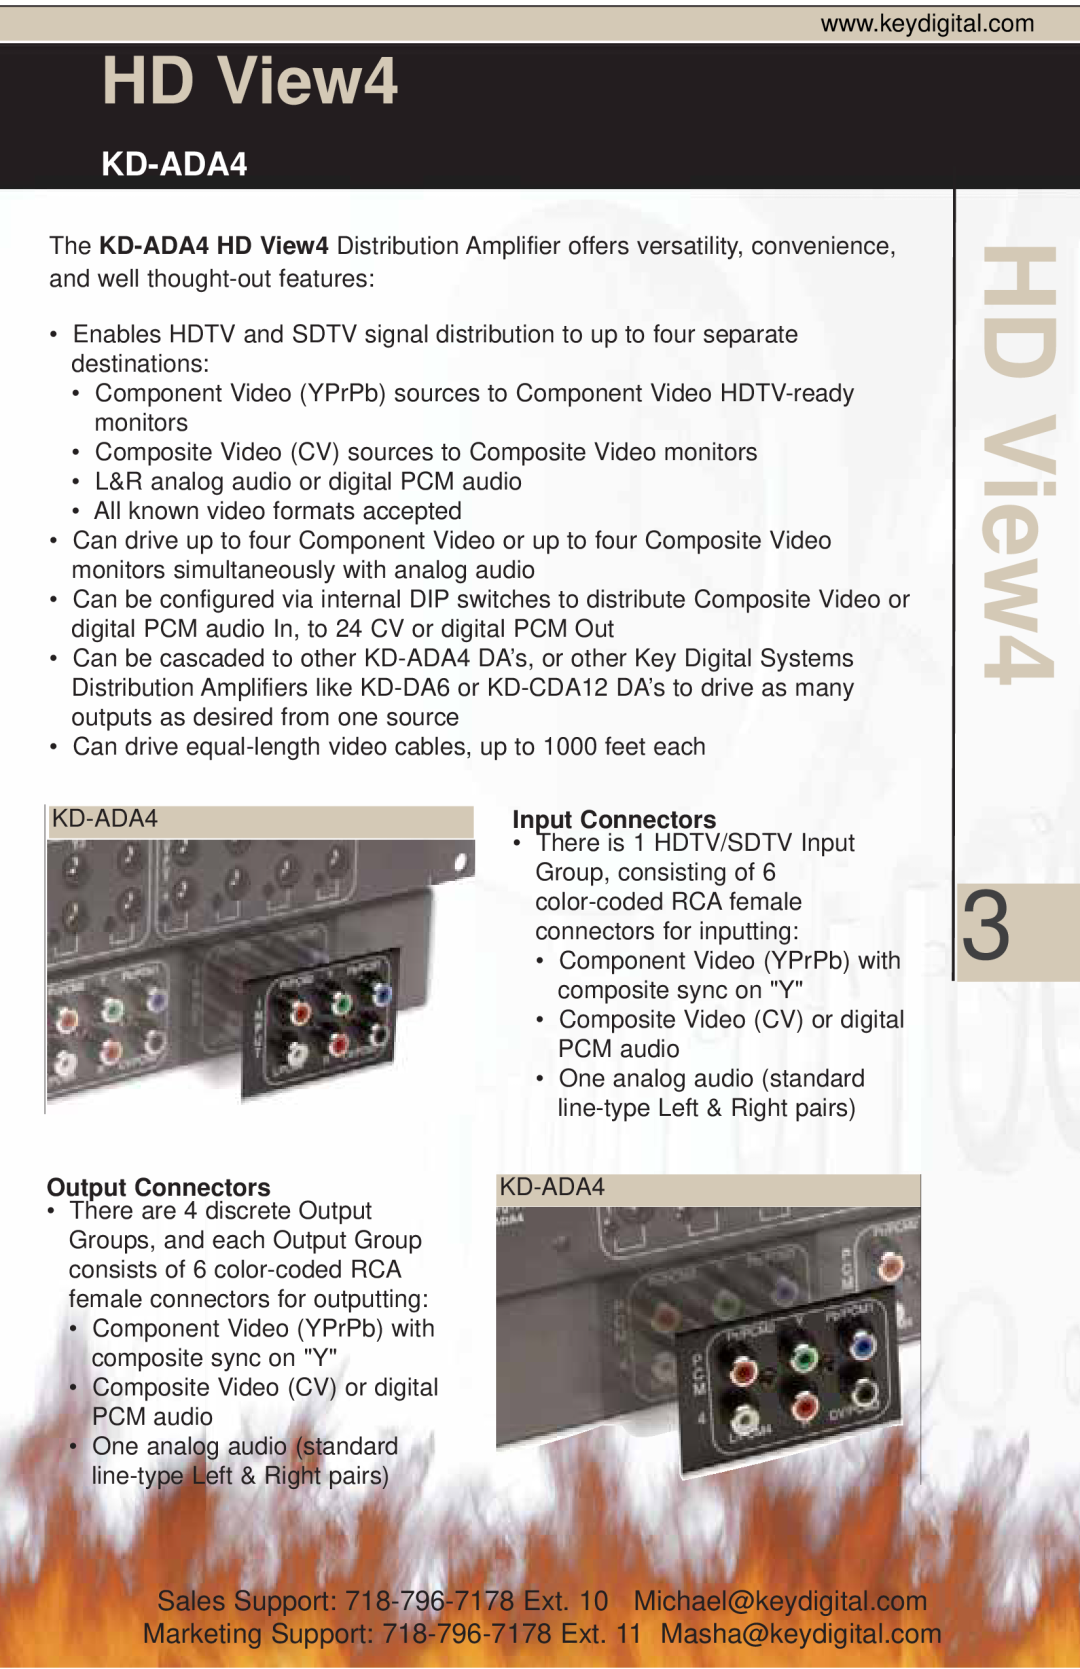 Key Digital KD-ADA4 manual HD View4, Input Connectors, Output Connectors 